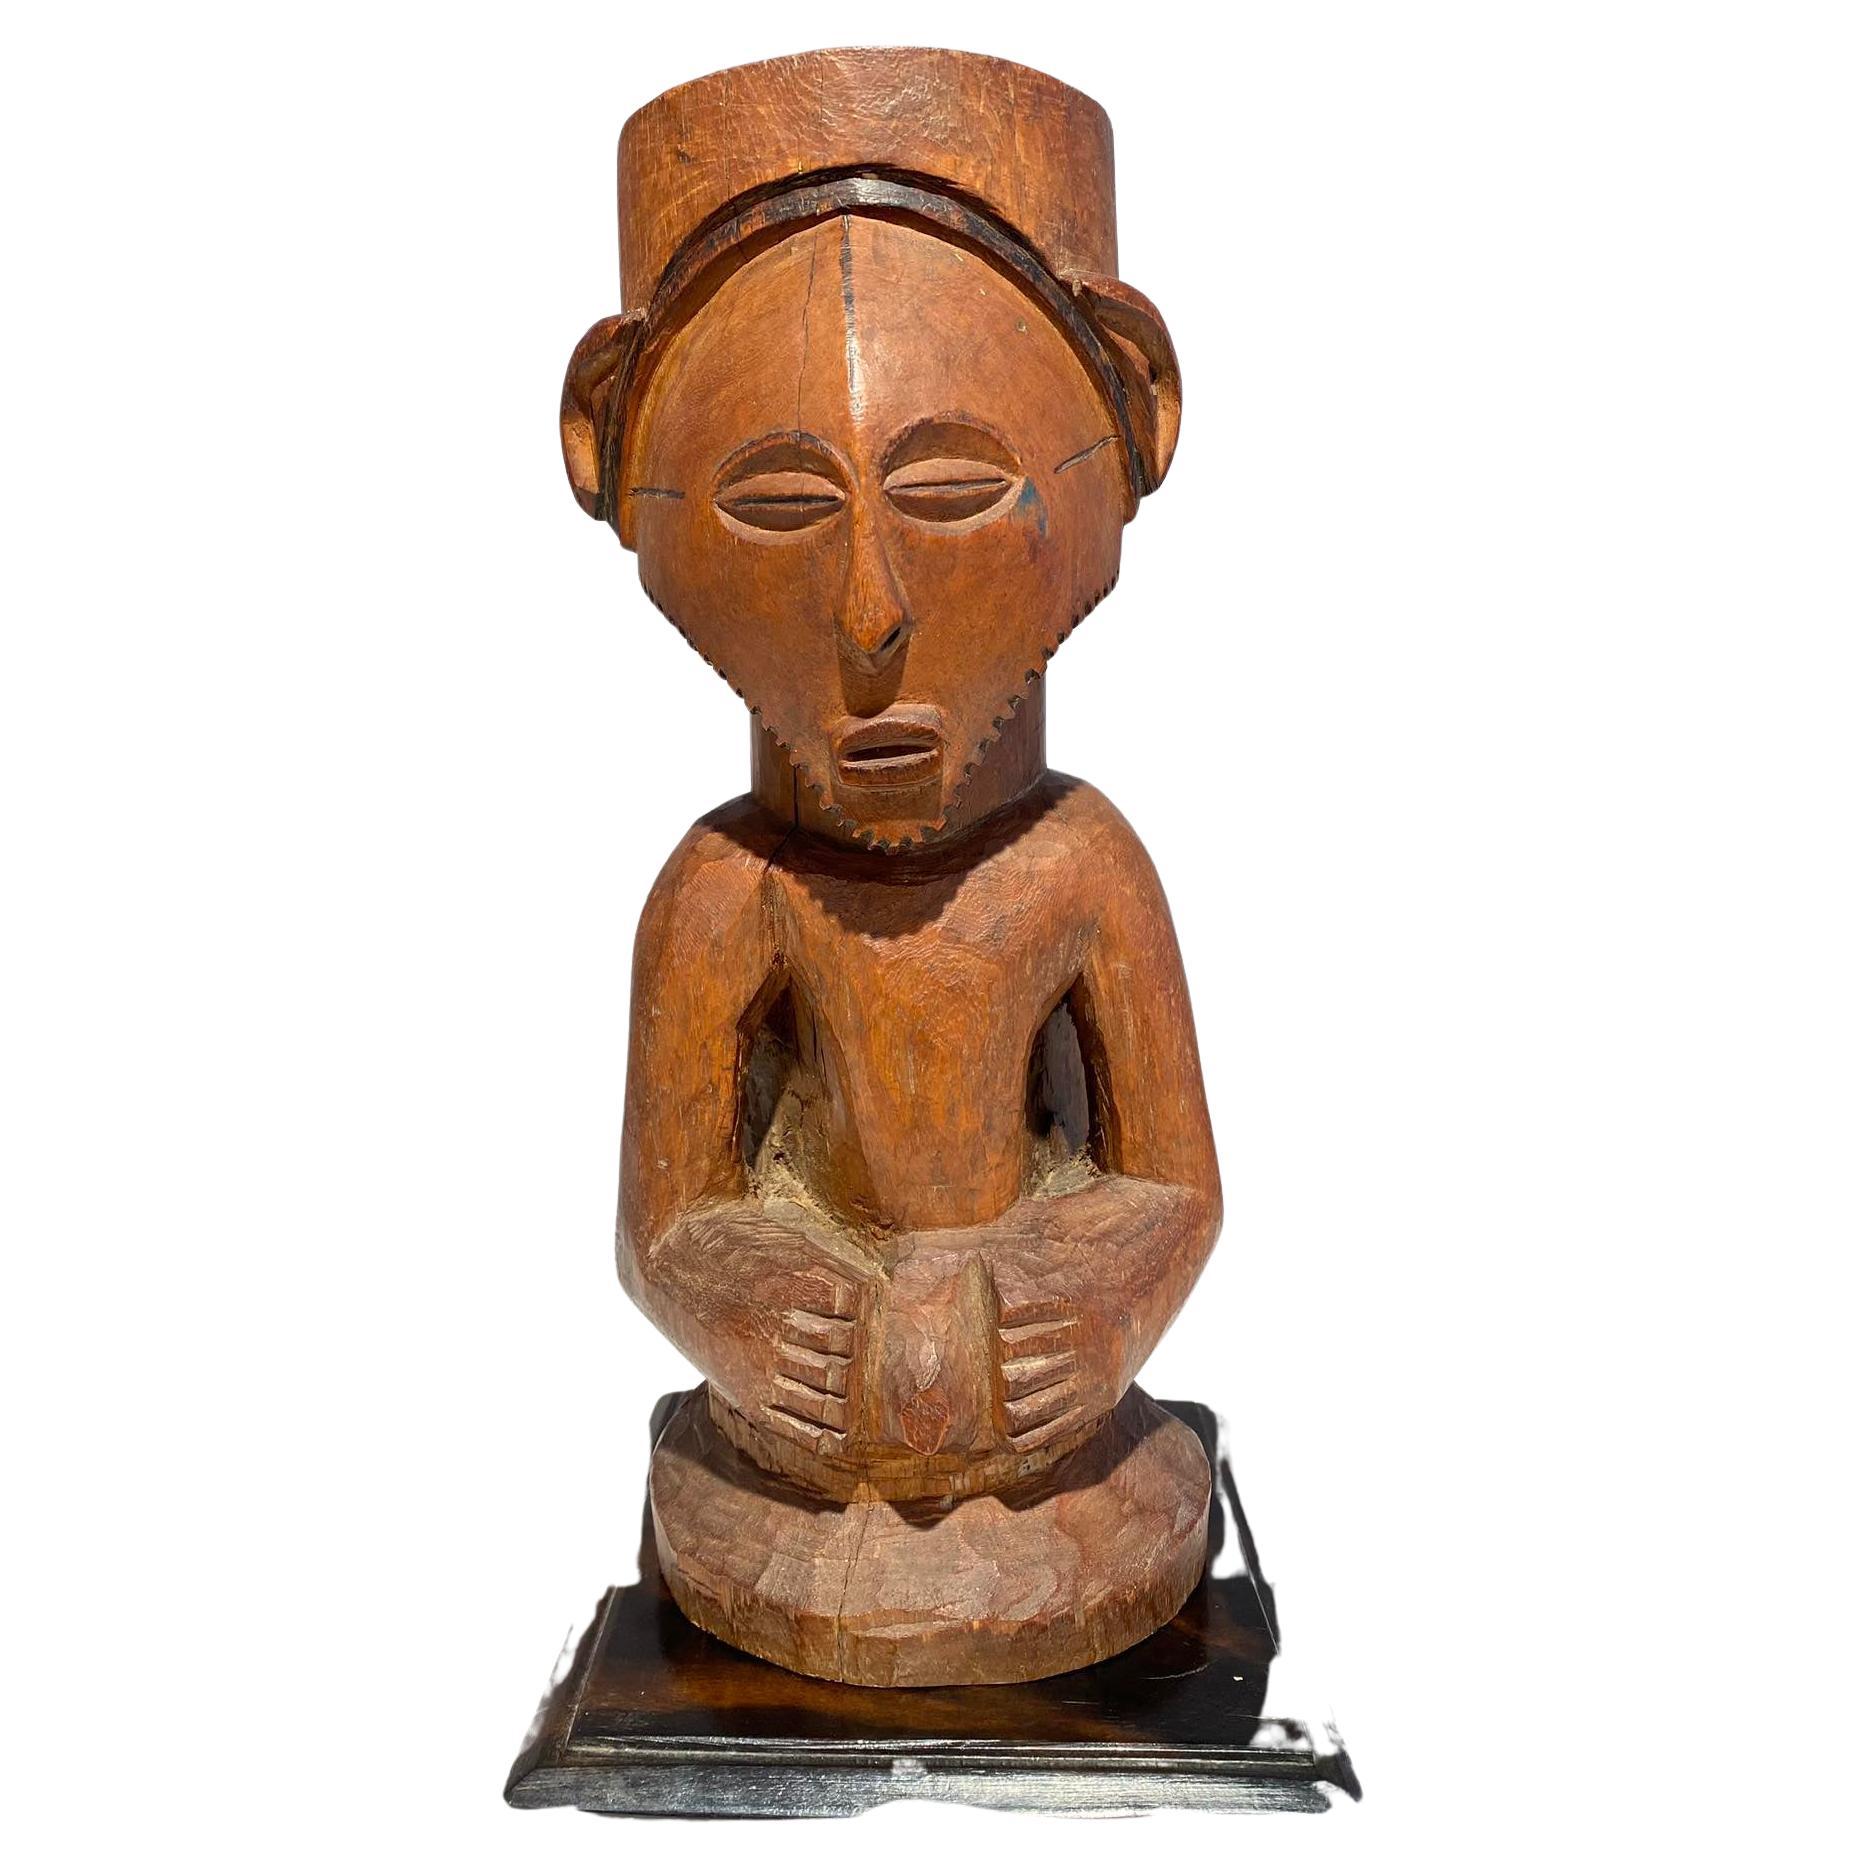 Kusu Ahnenfetisch aus Holz um 1900 DR Kongo Afrika Zentralafrikanische Tribal Art